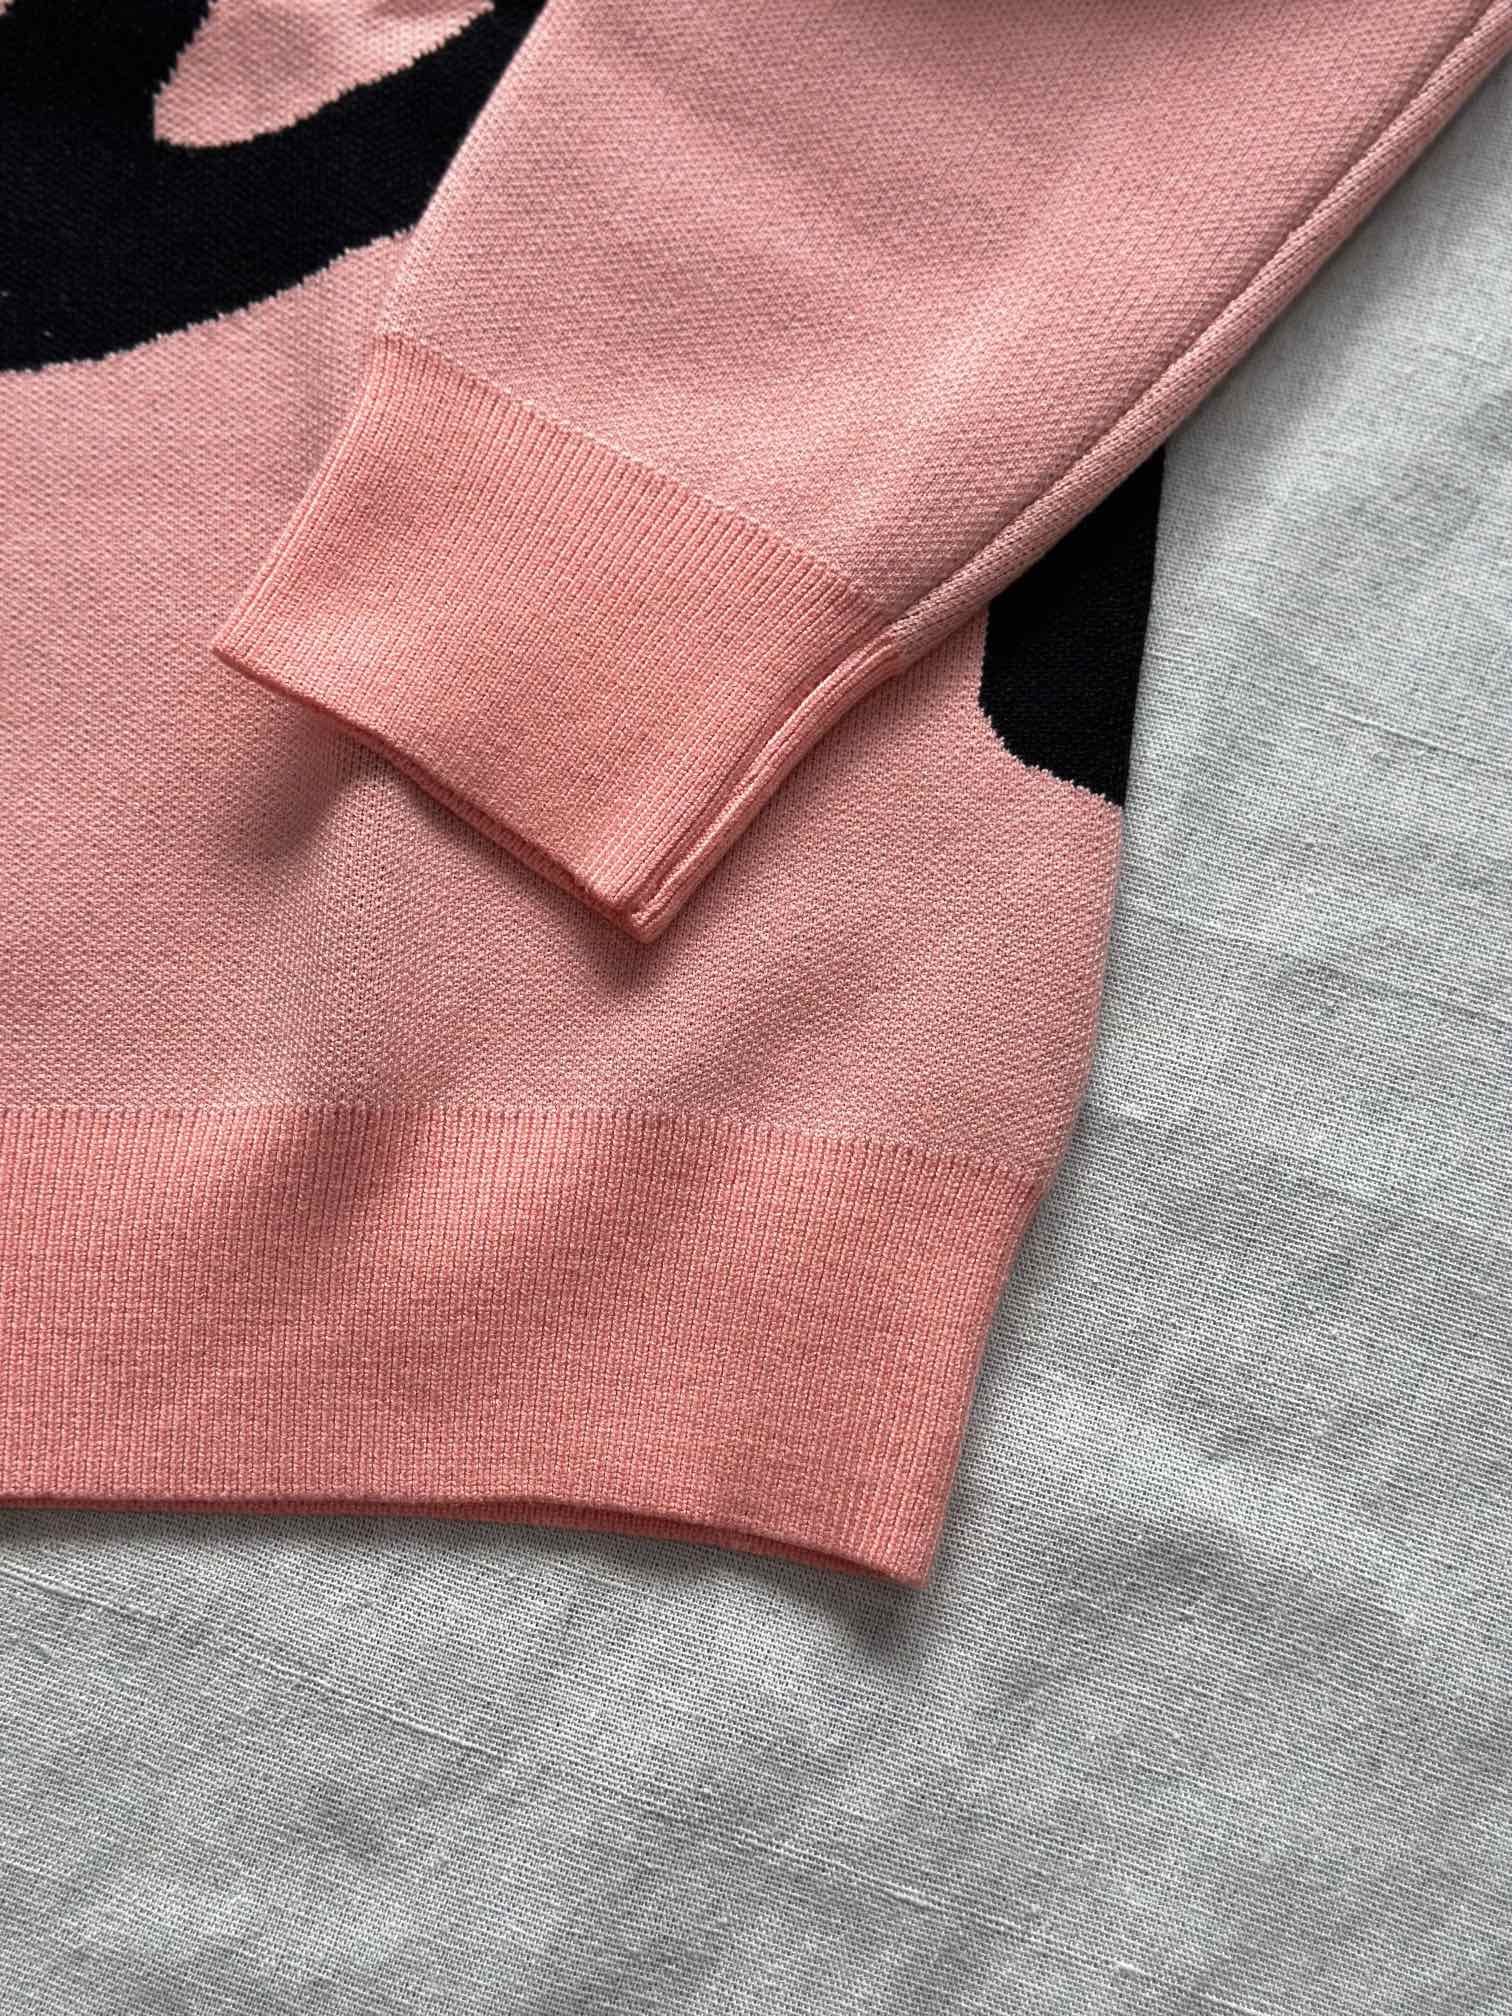 ステューシーセーターサイズ感偽物 ニットトップス 暖かい 日常服 大人気 大きいロゴ ゆったり ピンク_5